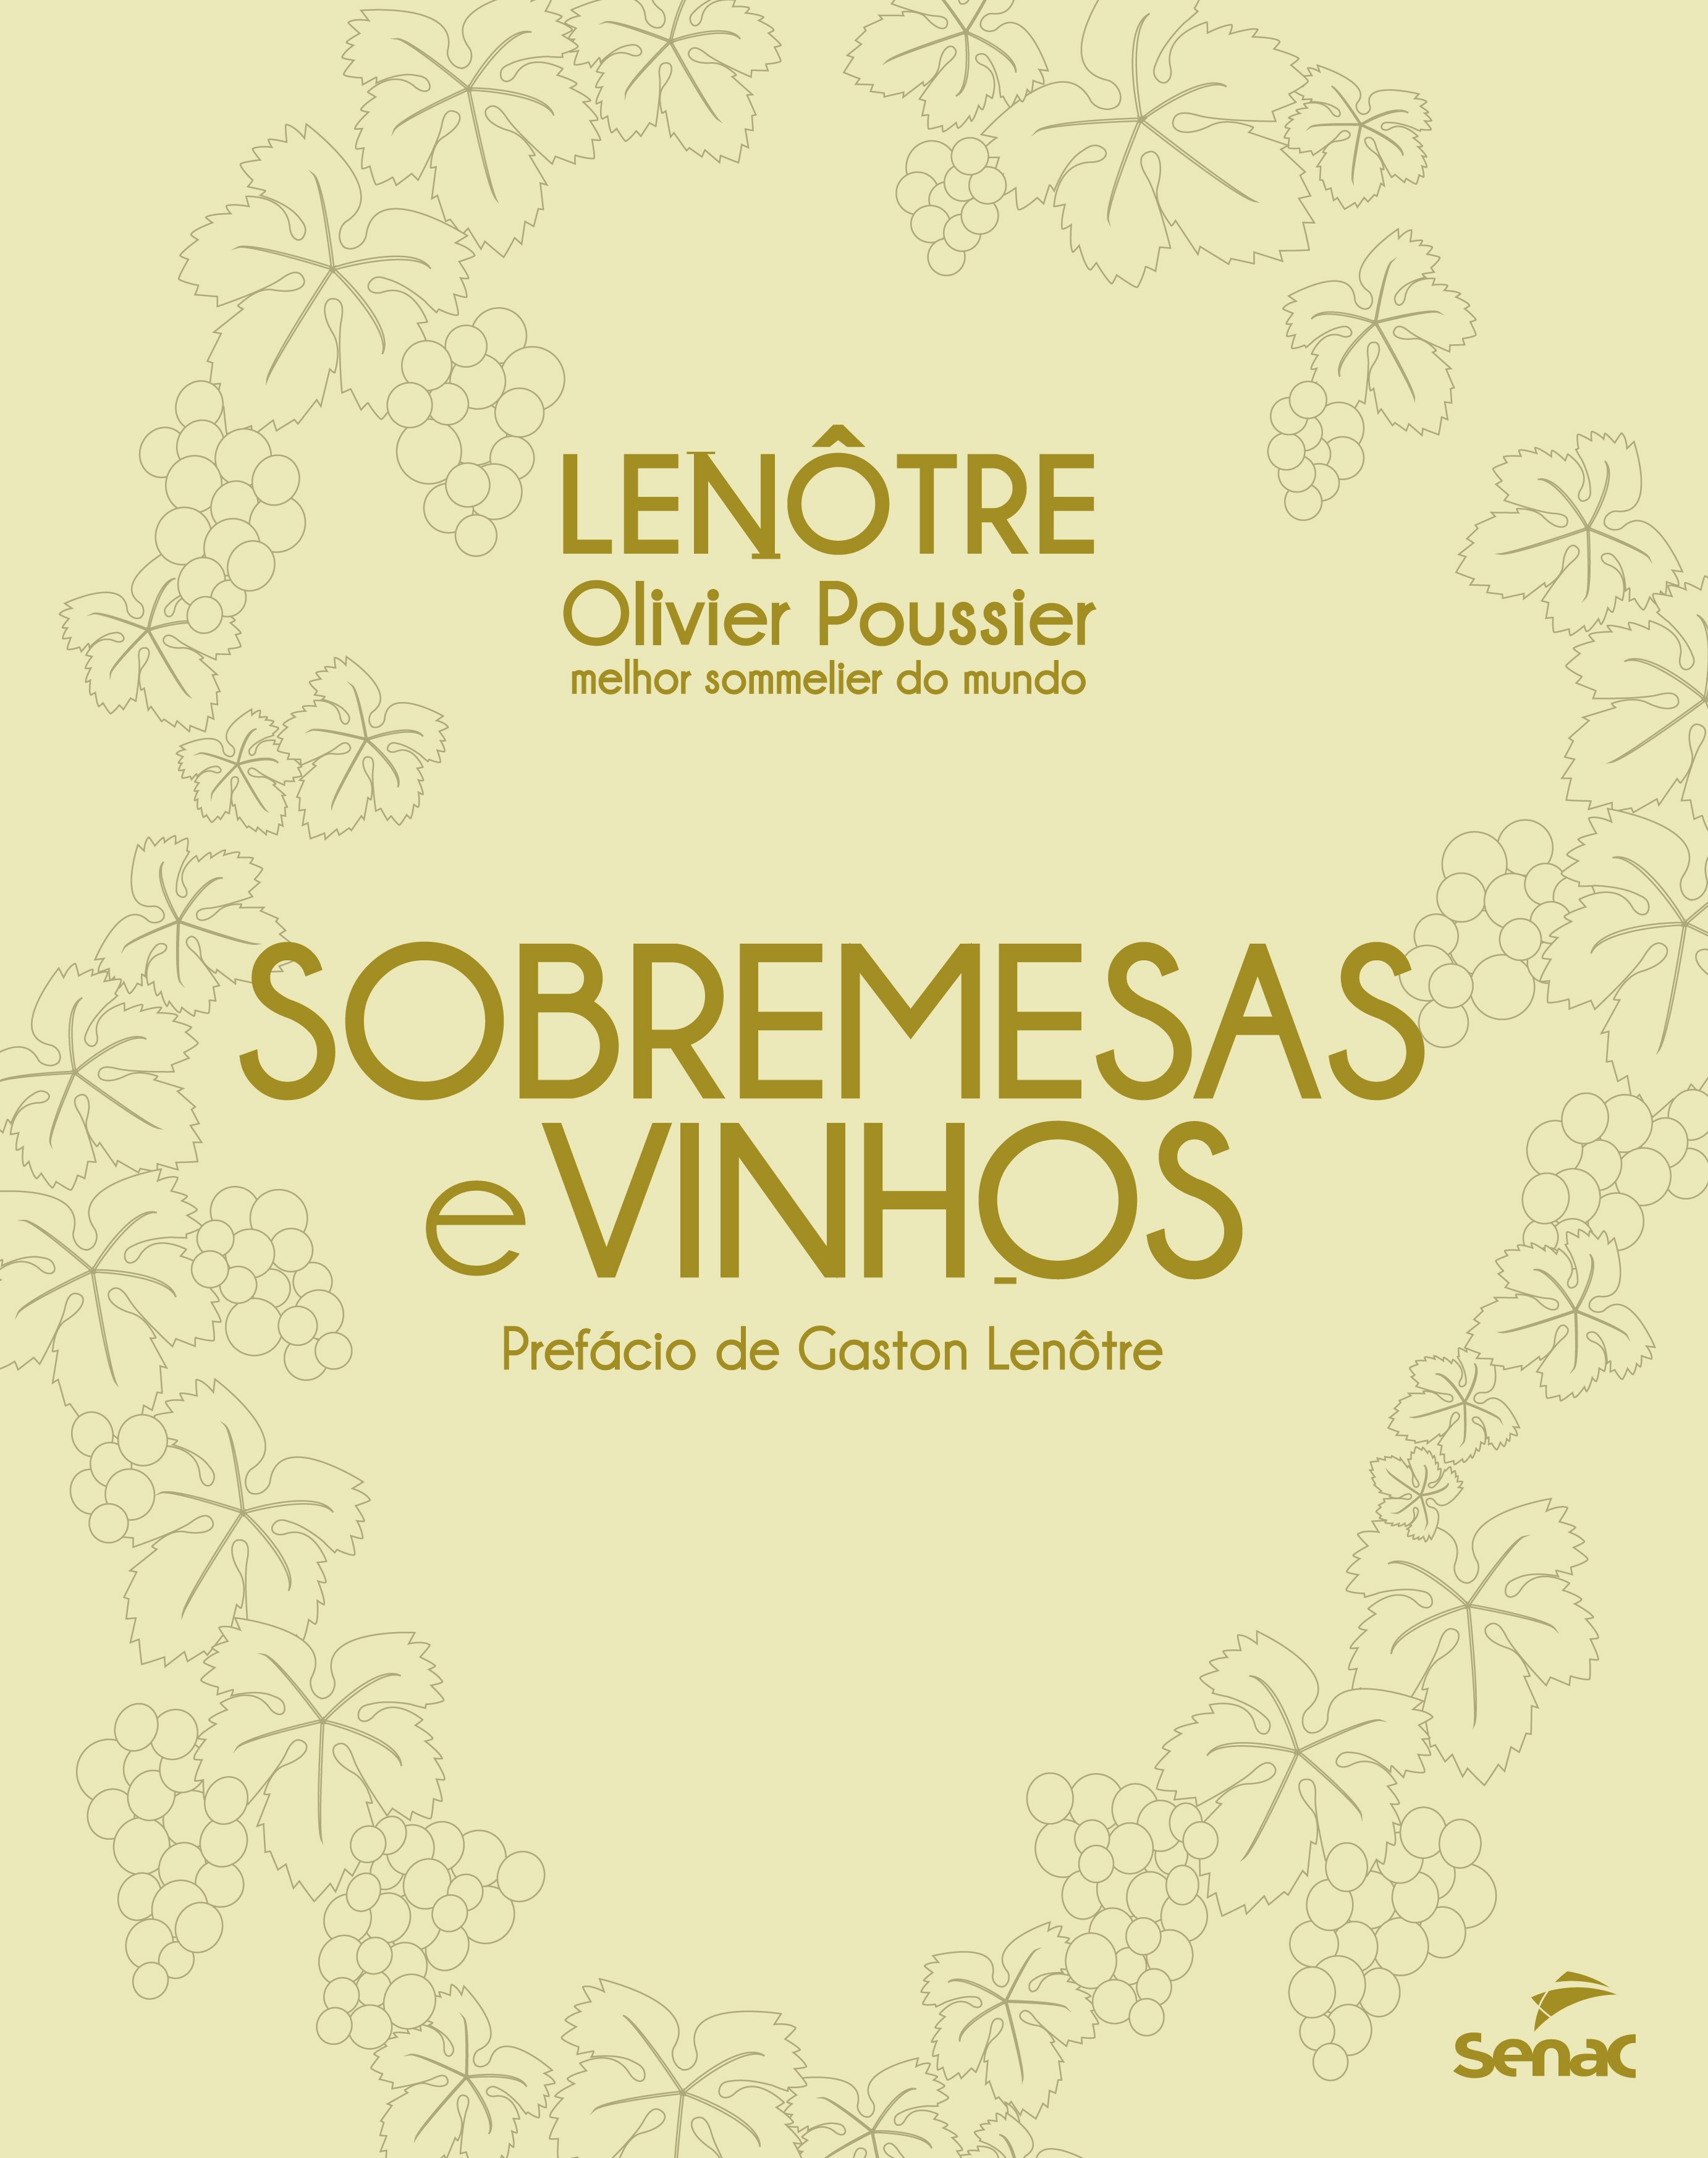 Sobremesas e vinhos - Lenotrê